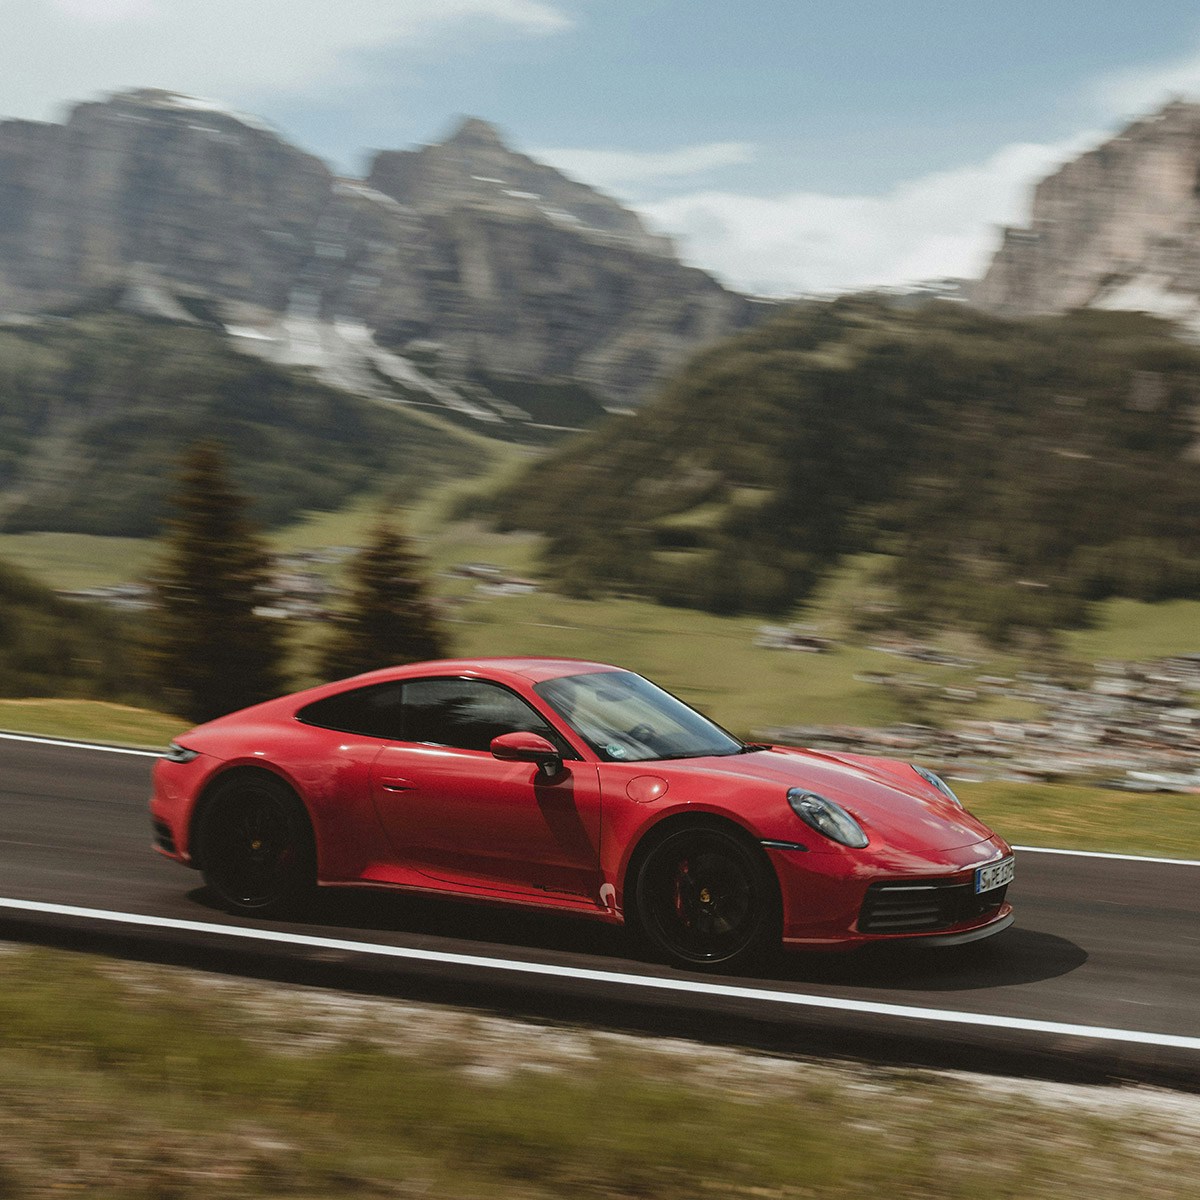 Ein roter Porsche fährt eine Strasse in den Alpen entlang.